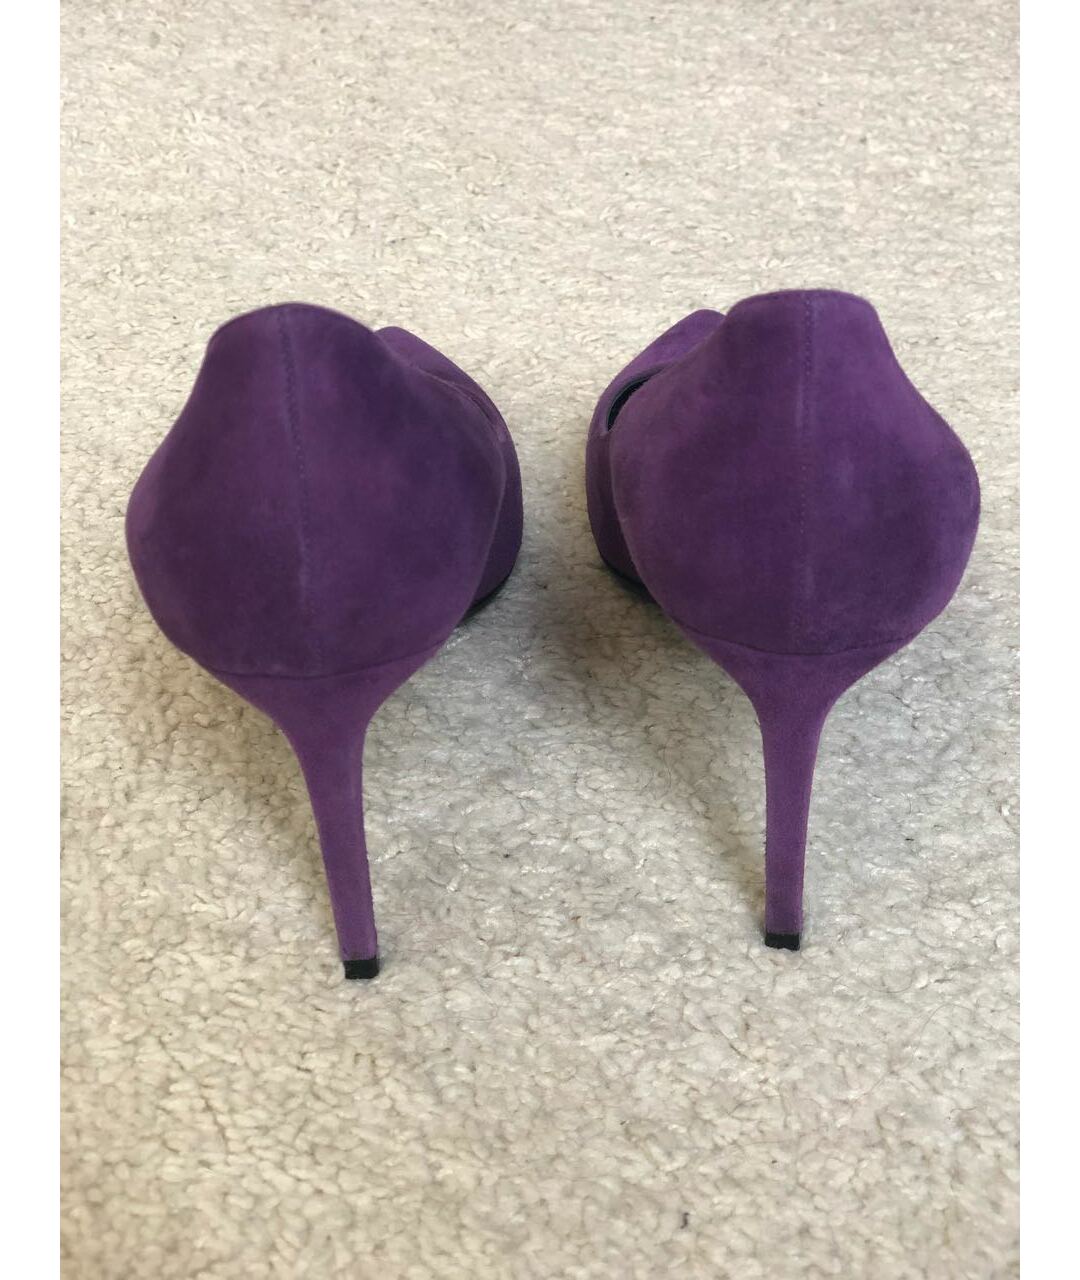 SAINT LAURENT Фиолетовые замшевые туфли, фото 7